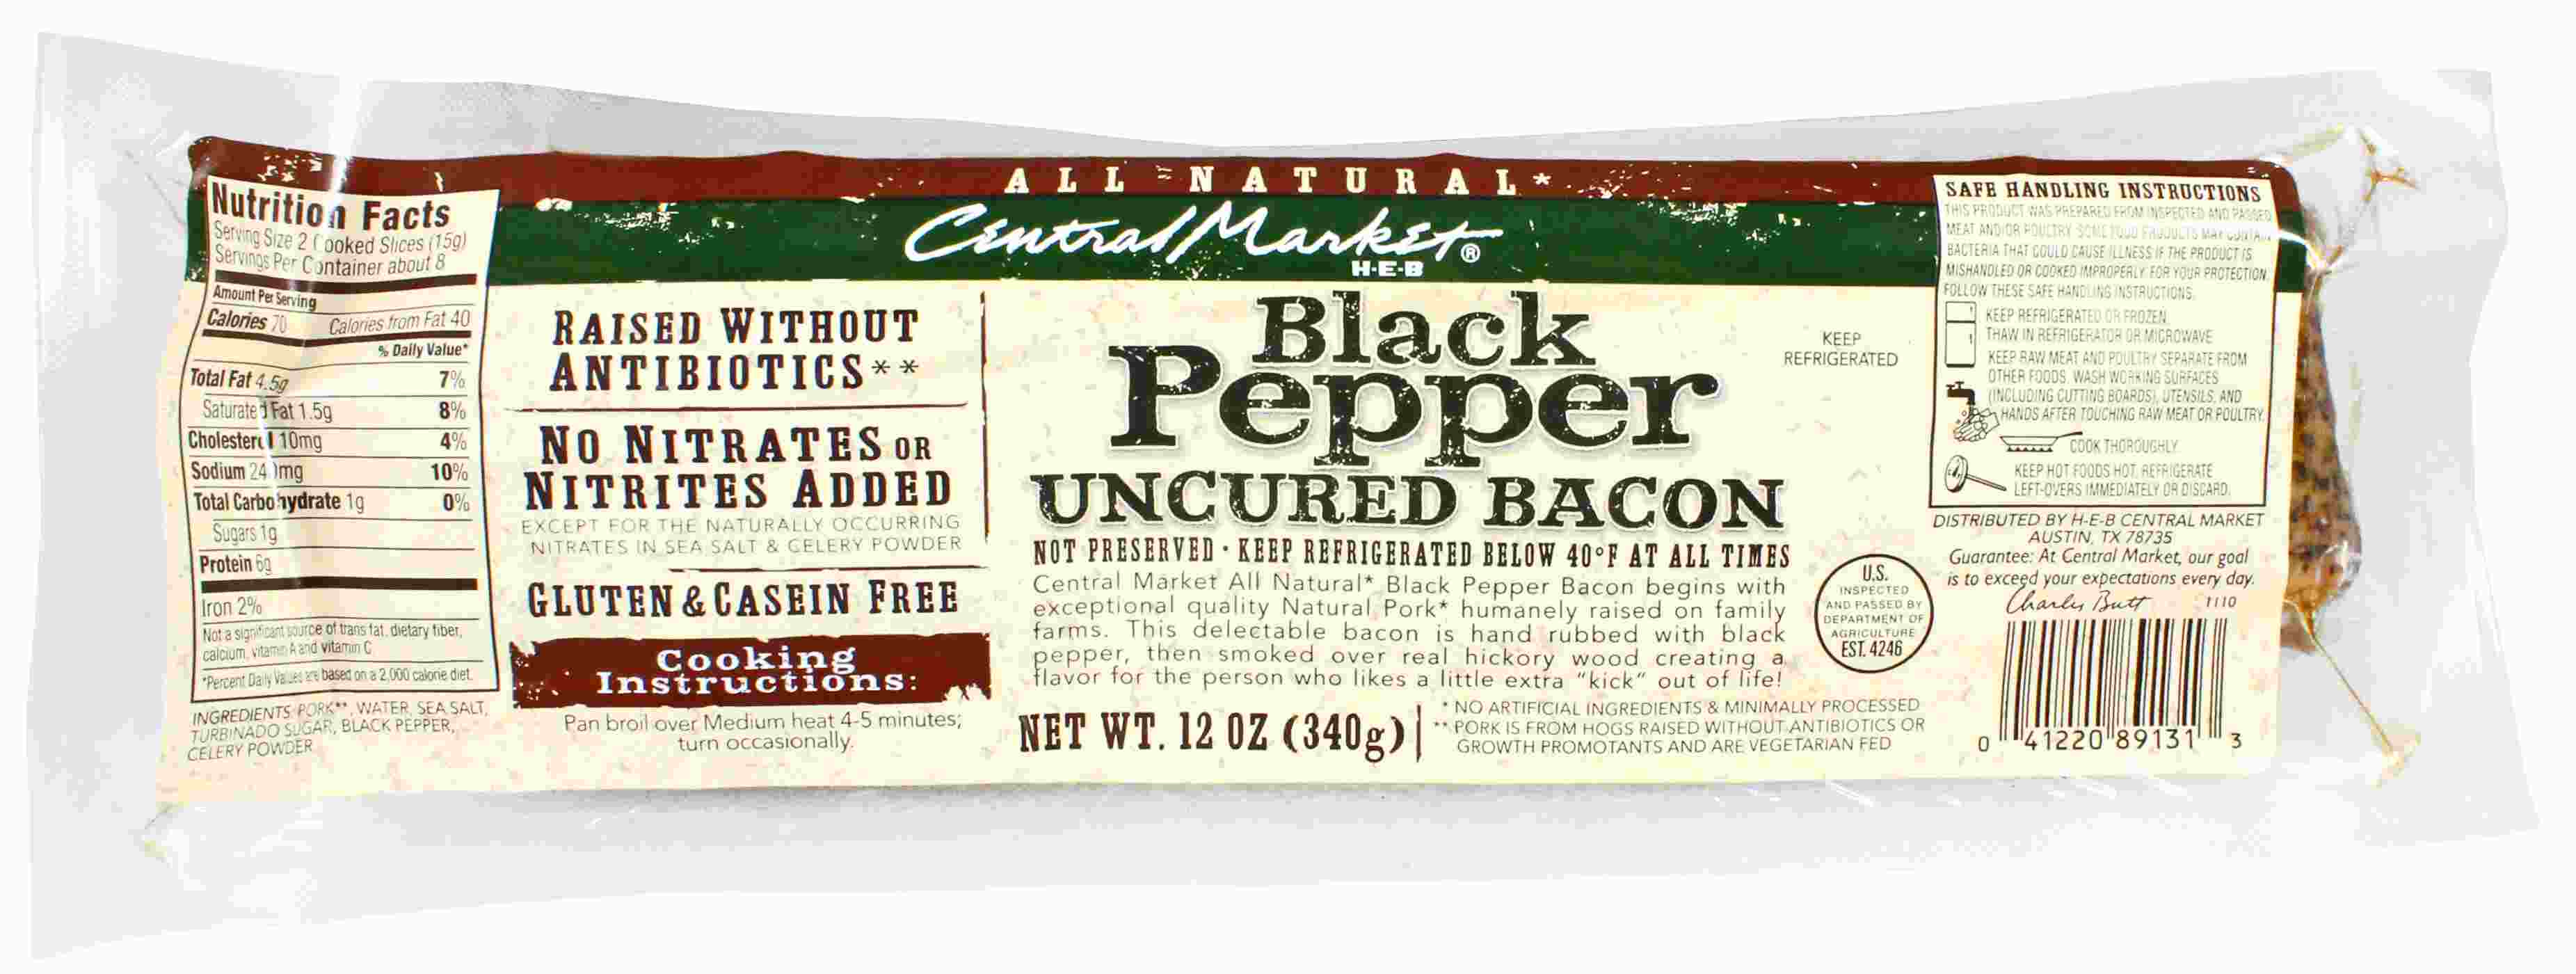 Central Market Natural Black Pepper Uncured Bacon; image 1 of 2